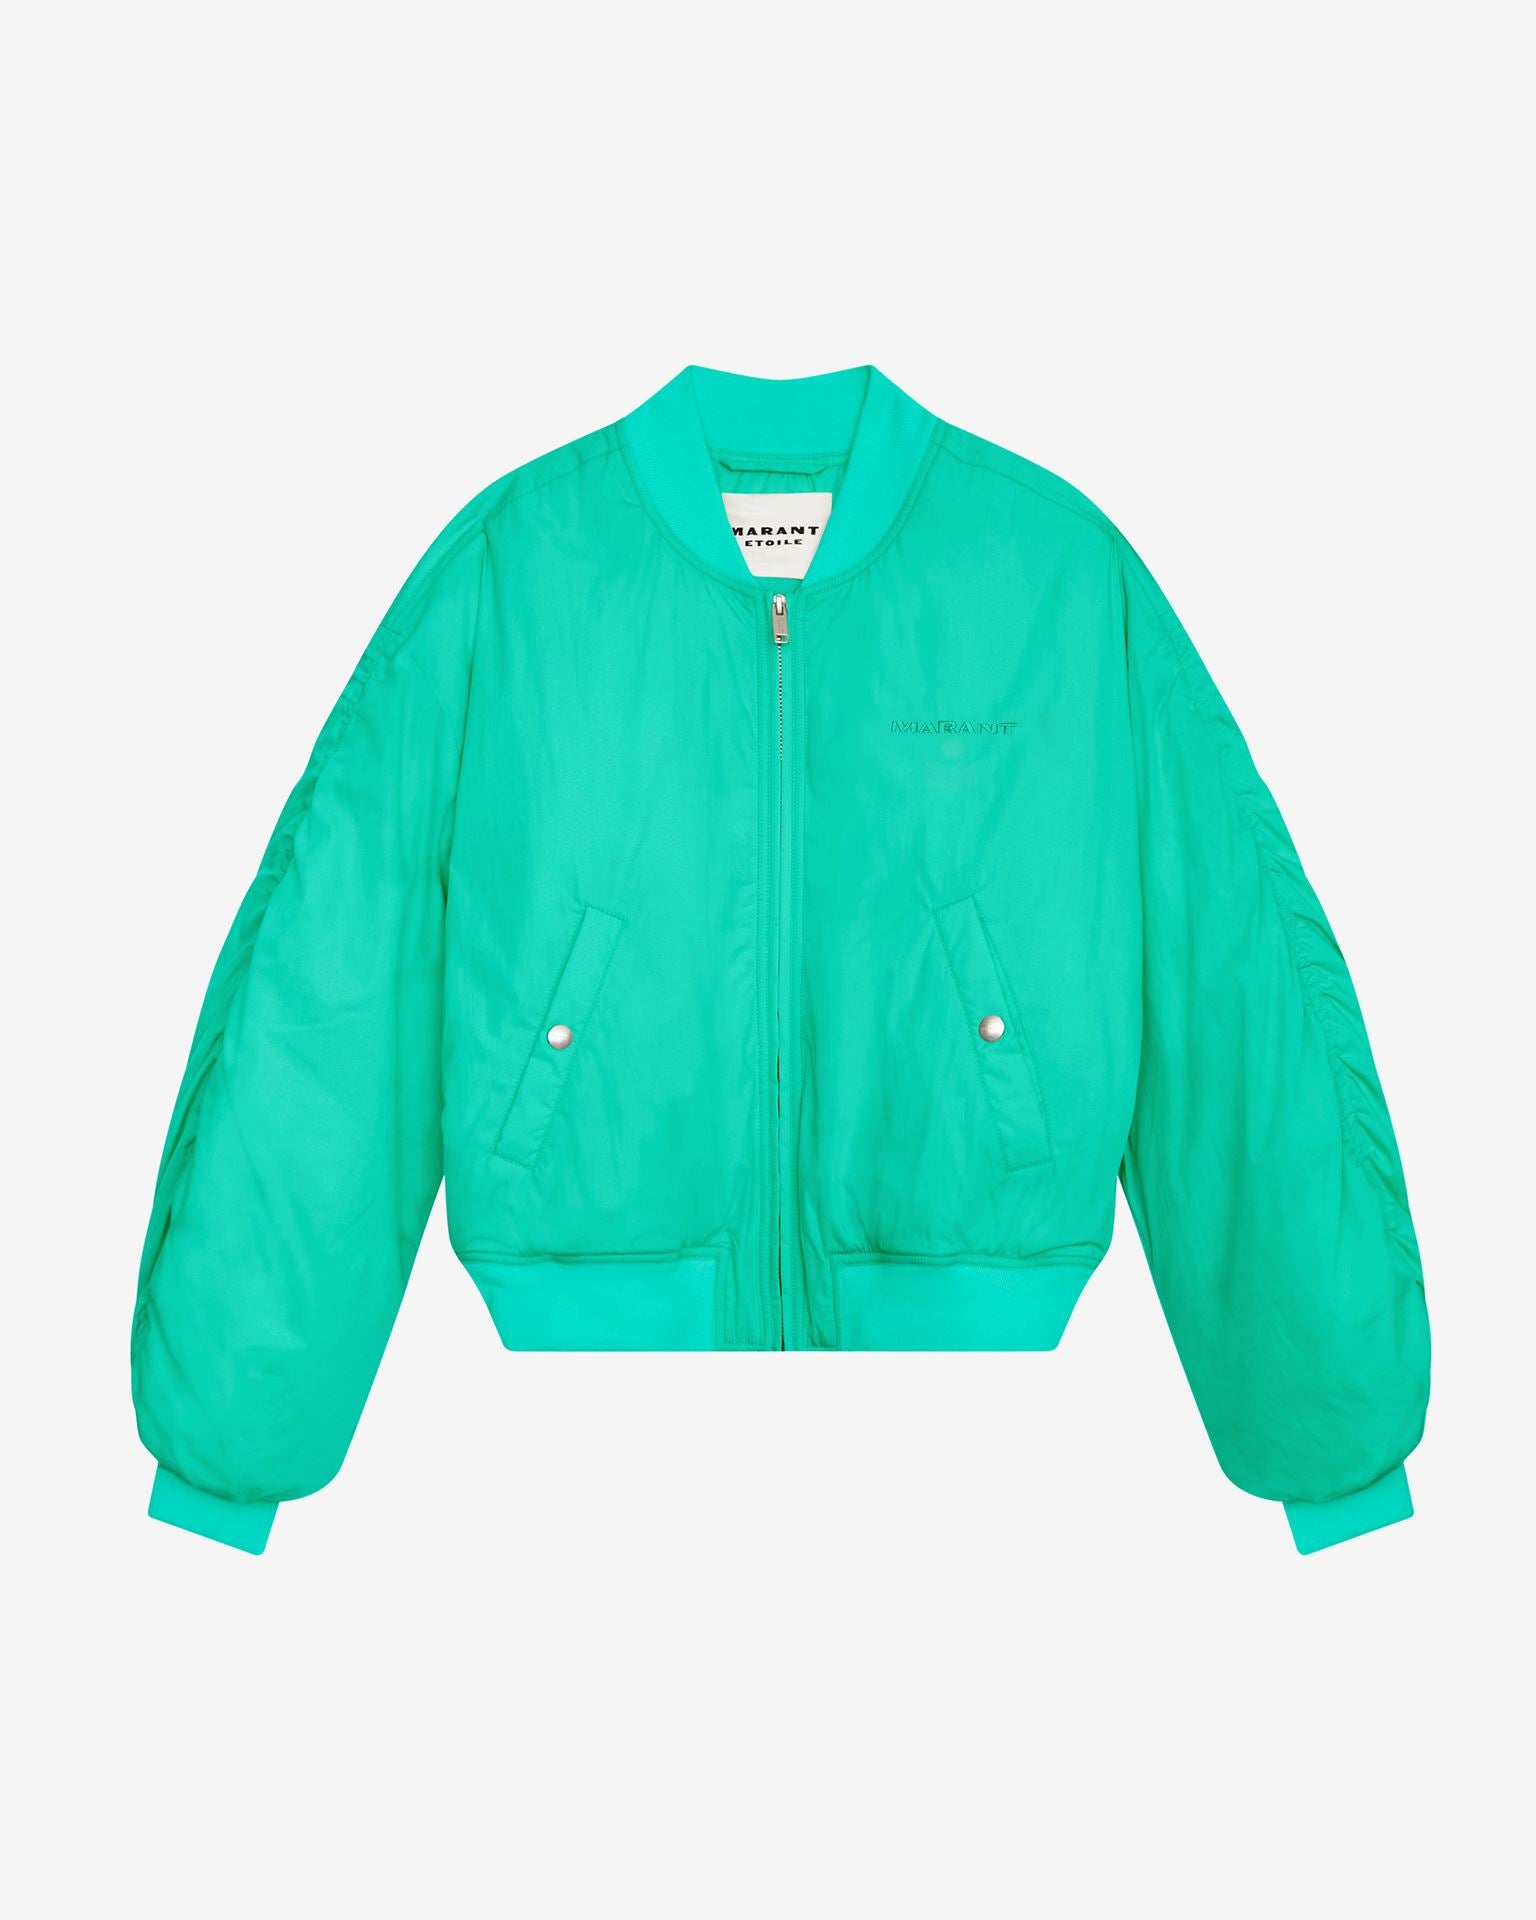 Bessime jacket, emerald